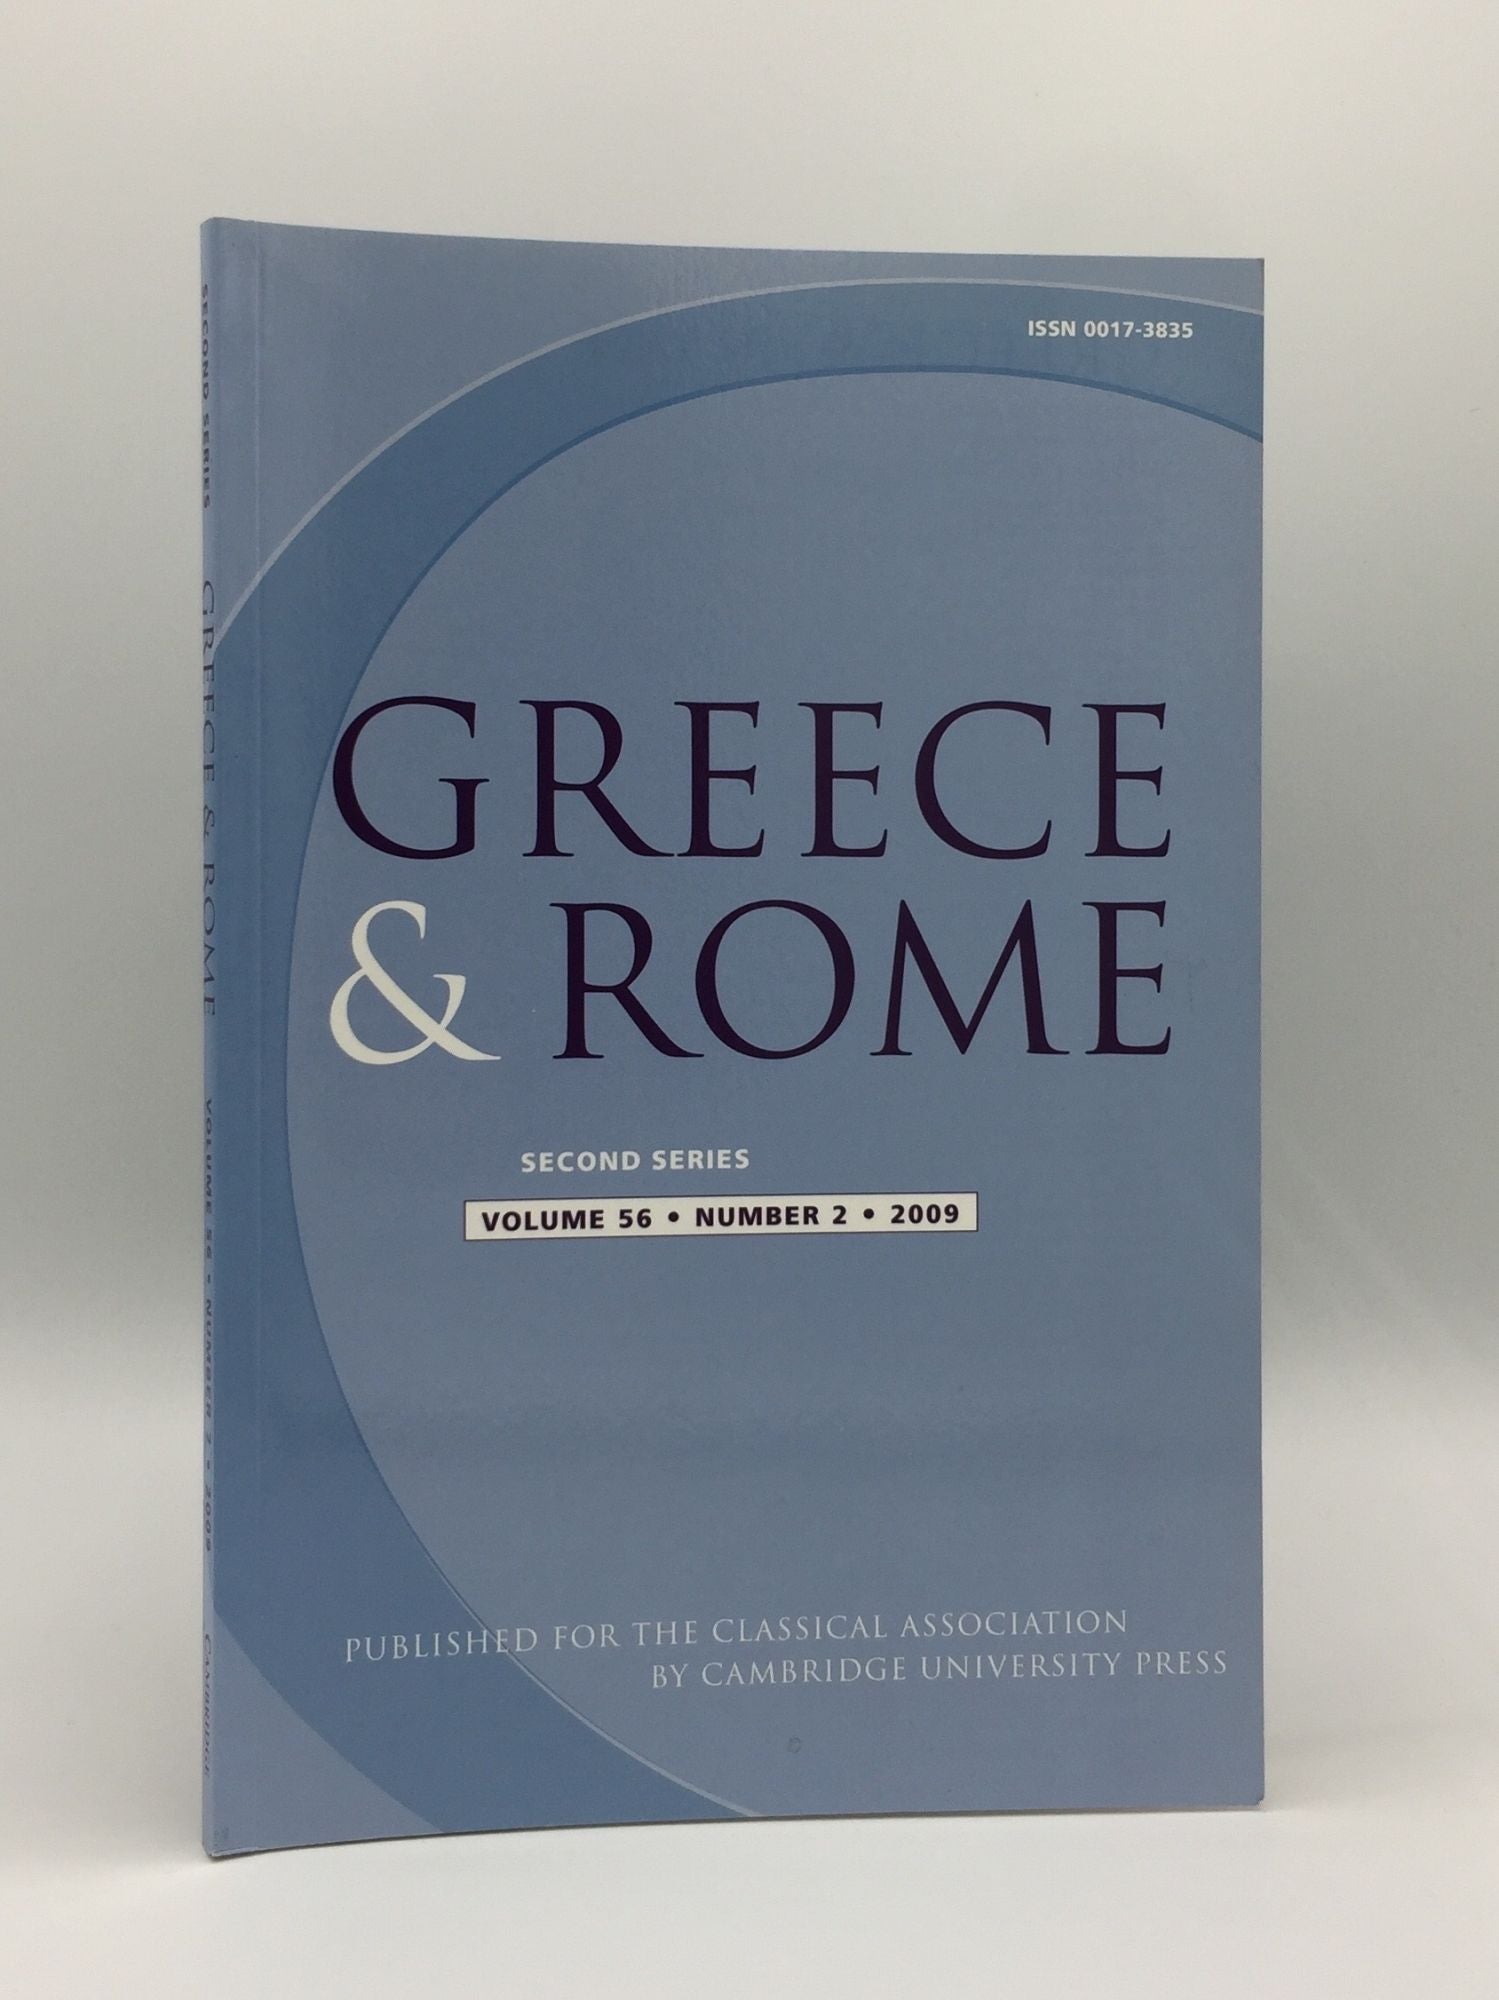 TAYLOR J., IZZET V., SHORROCK R. - Greece & Rome Second Series October 2009 Vol. 56 No. 2